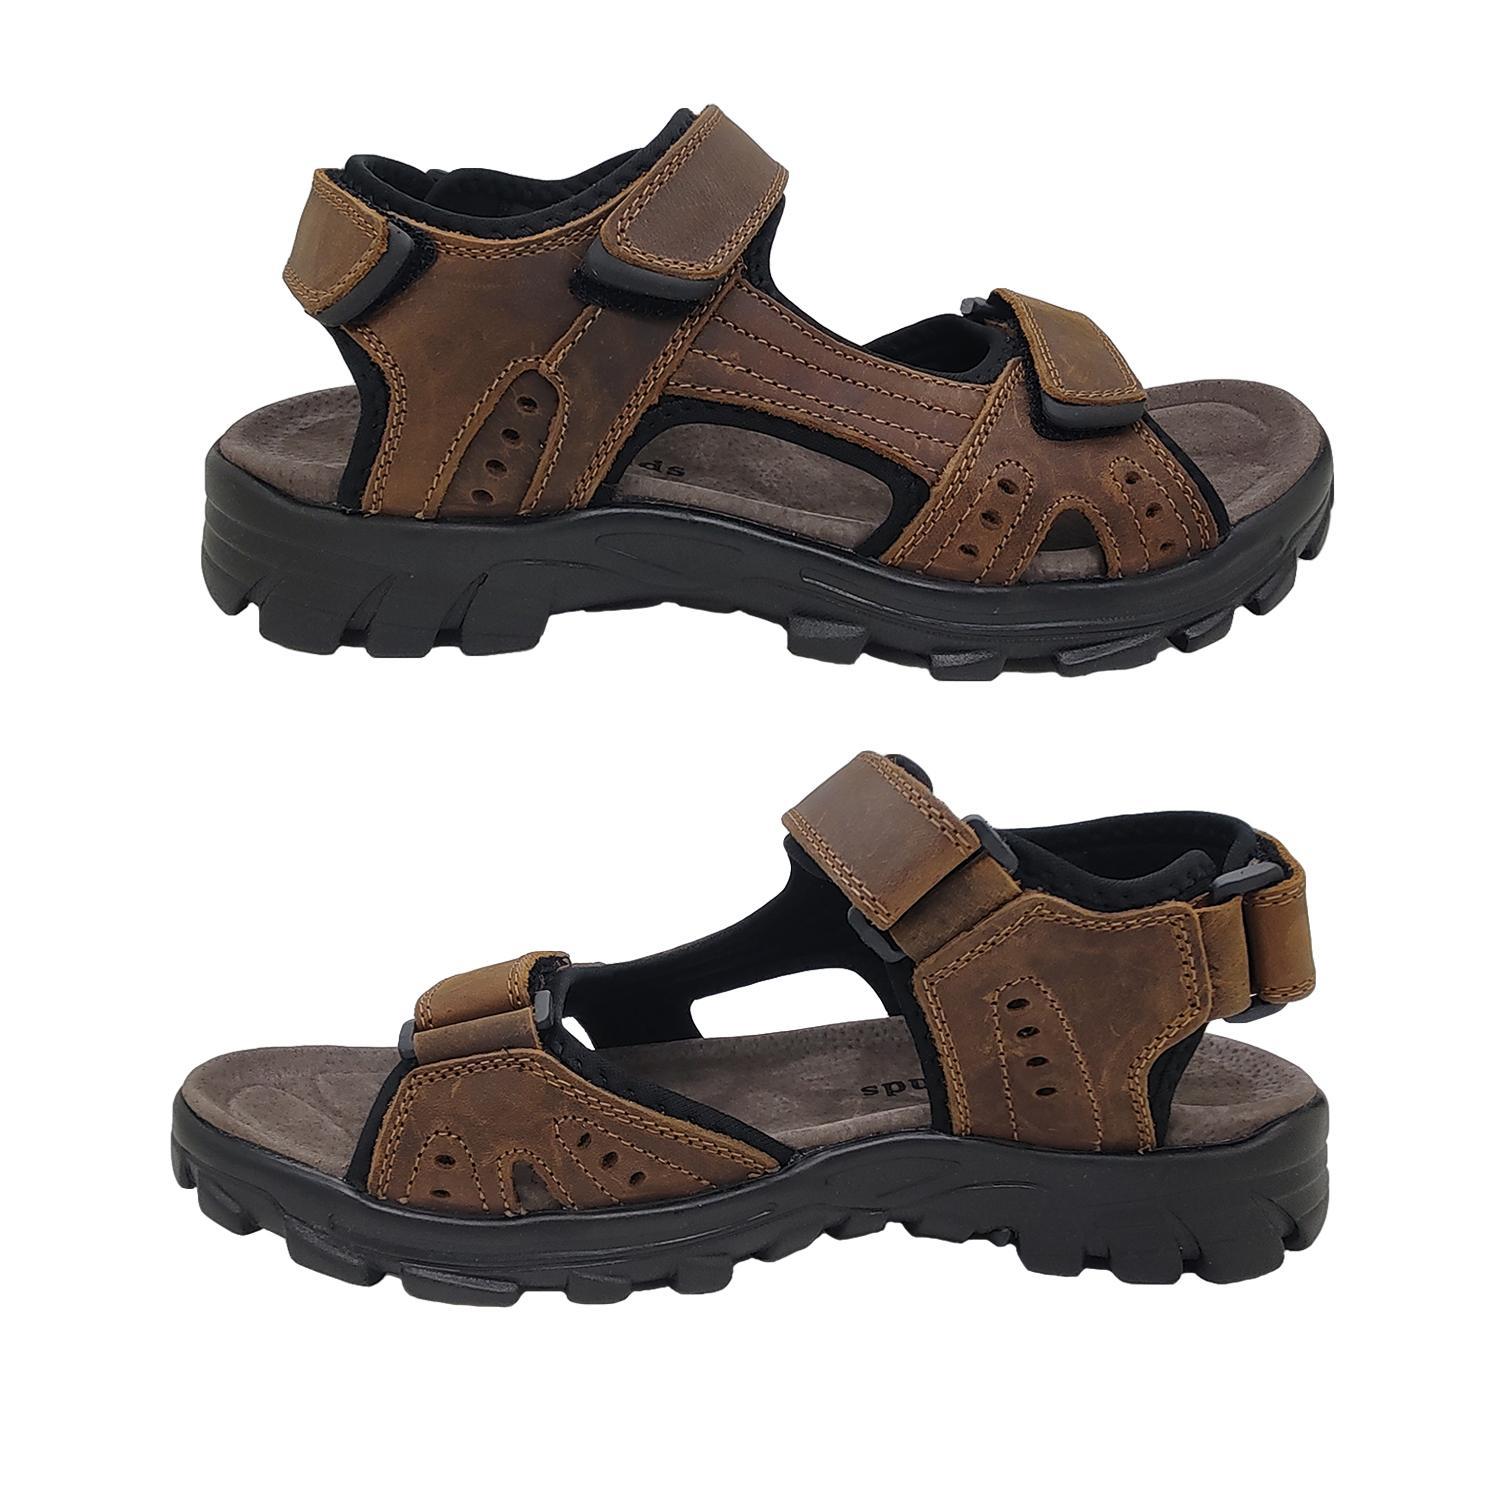 Woodlands Enrique Mens Sandals Leather Upper Multi Adjust Surf Style Comfort-Brown-9